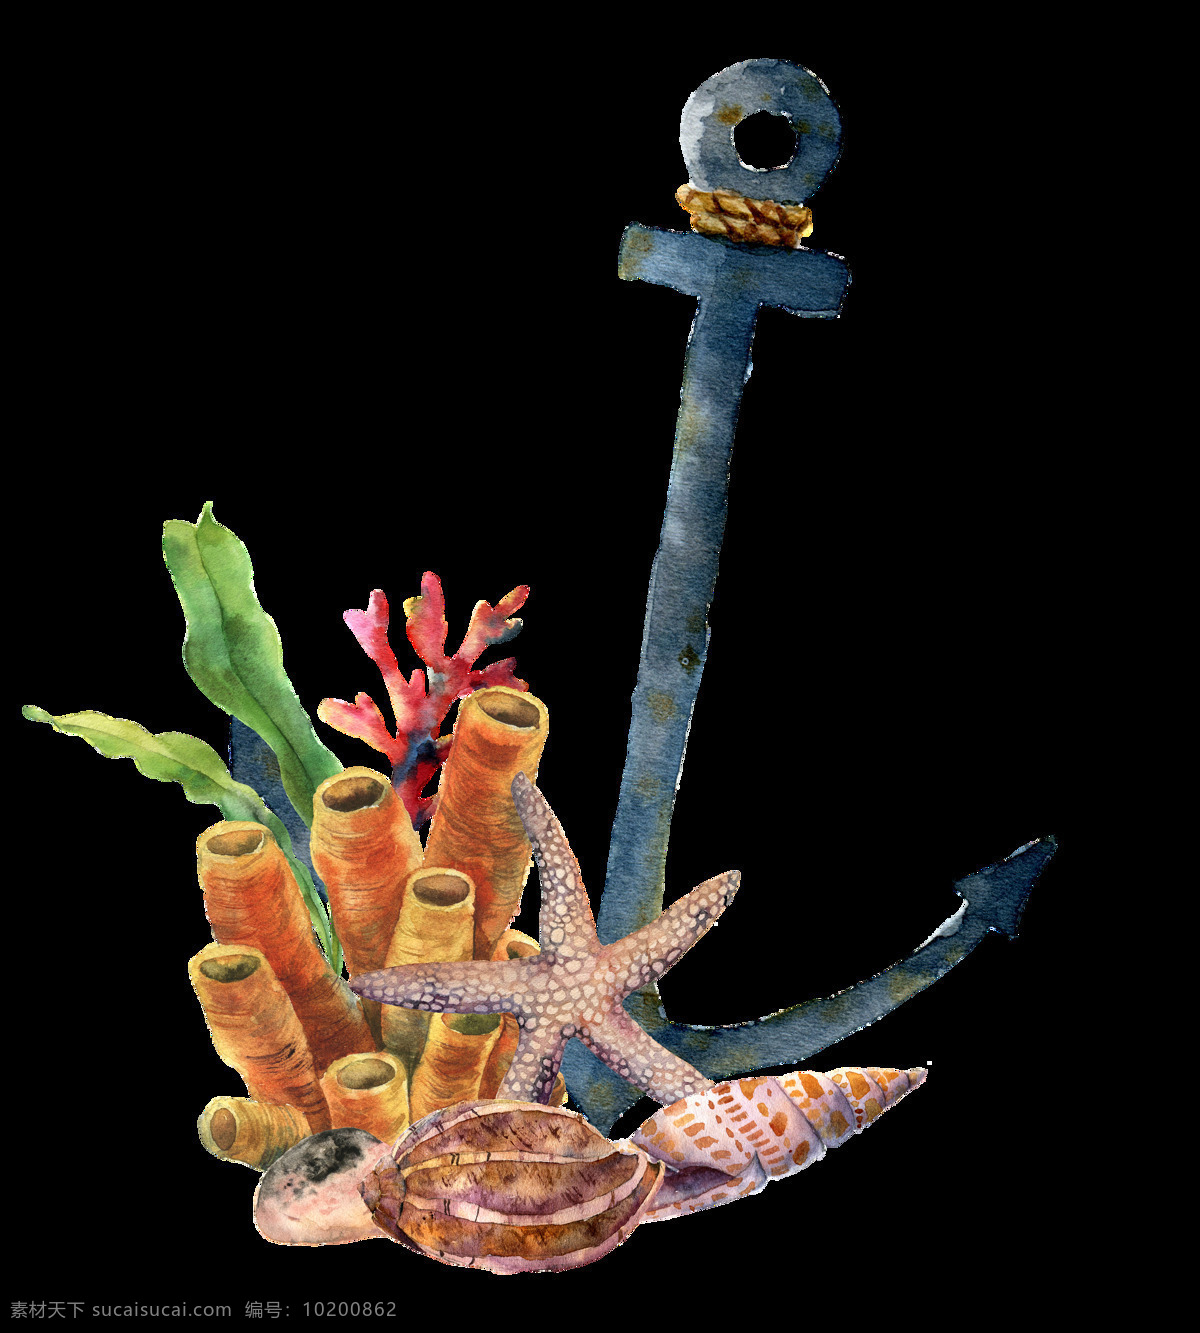 海洋 主题 插画 图案 海螺贝类 海洋生物 热带鱼群 水彩插画 海底世界 海洋生物插画 鱼群插画 装饰图案 水草植物插画 珊瑚